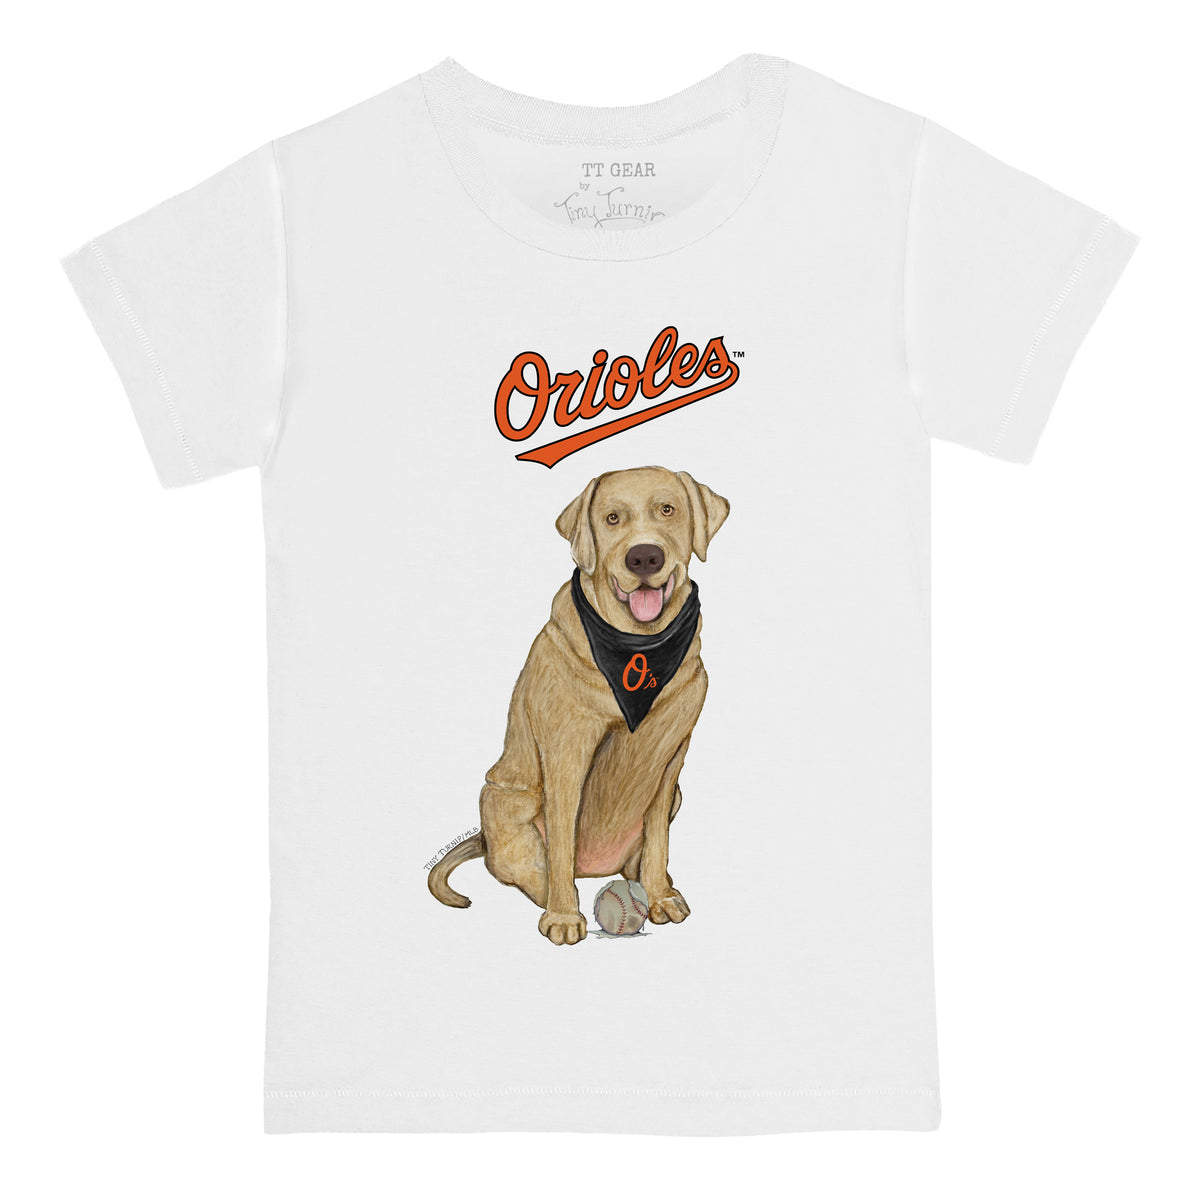 Baltimore Orioles Yellow Labrador Retriever Tee Shirt